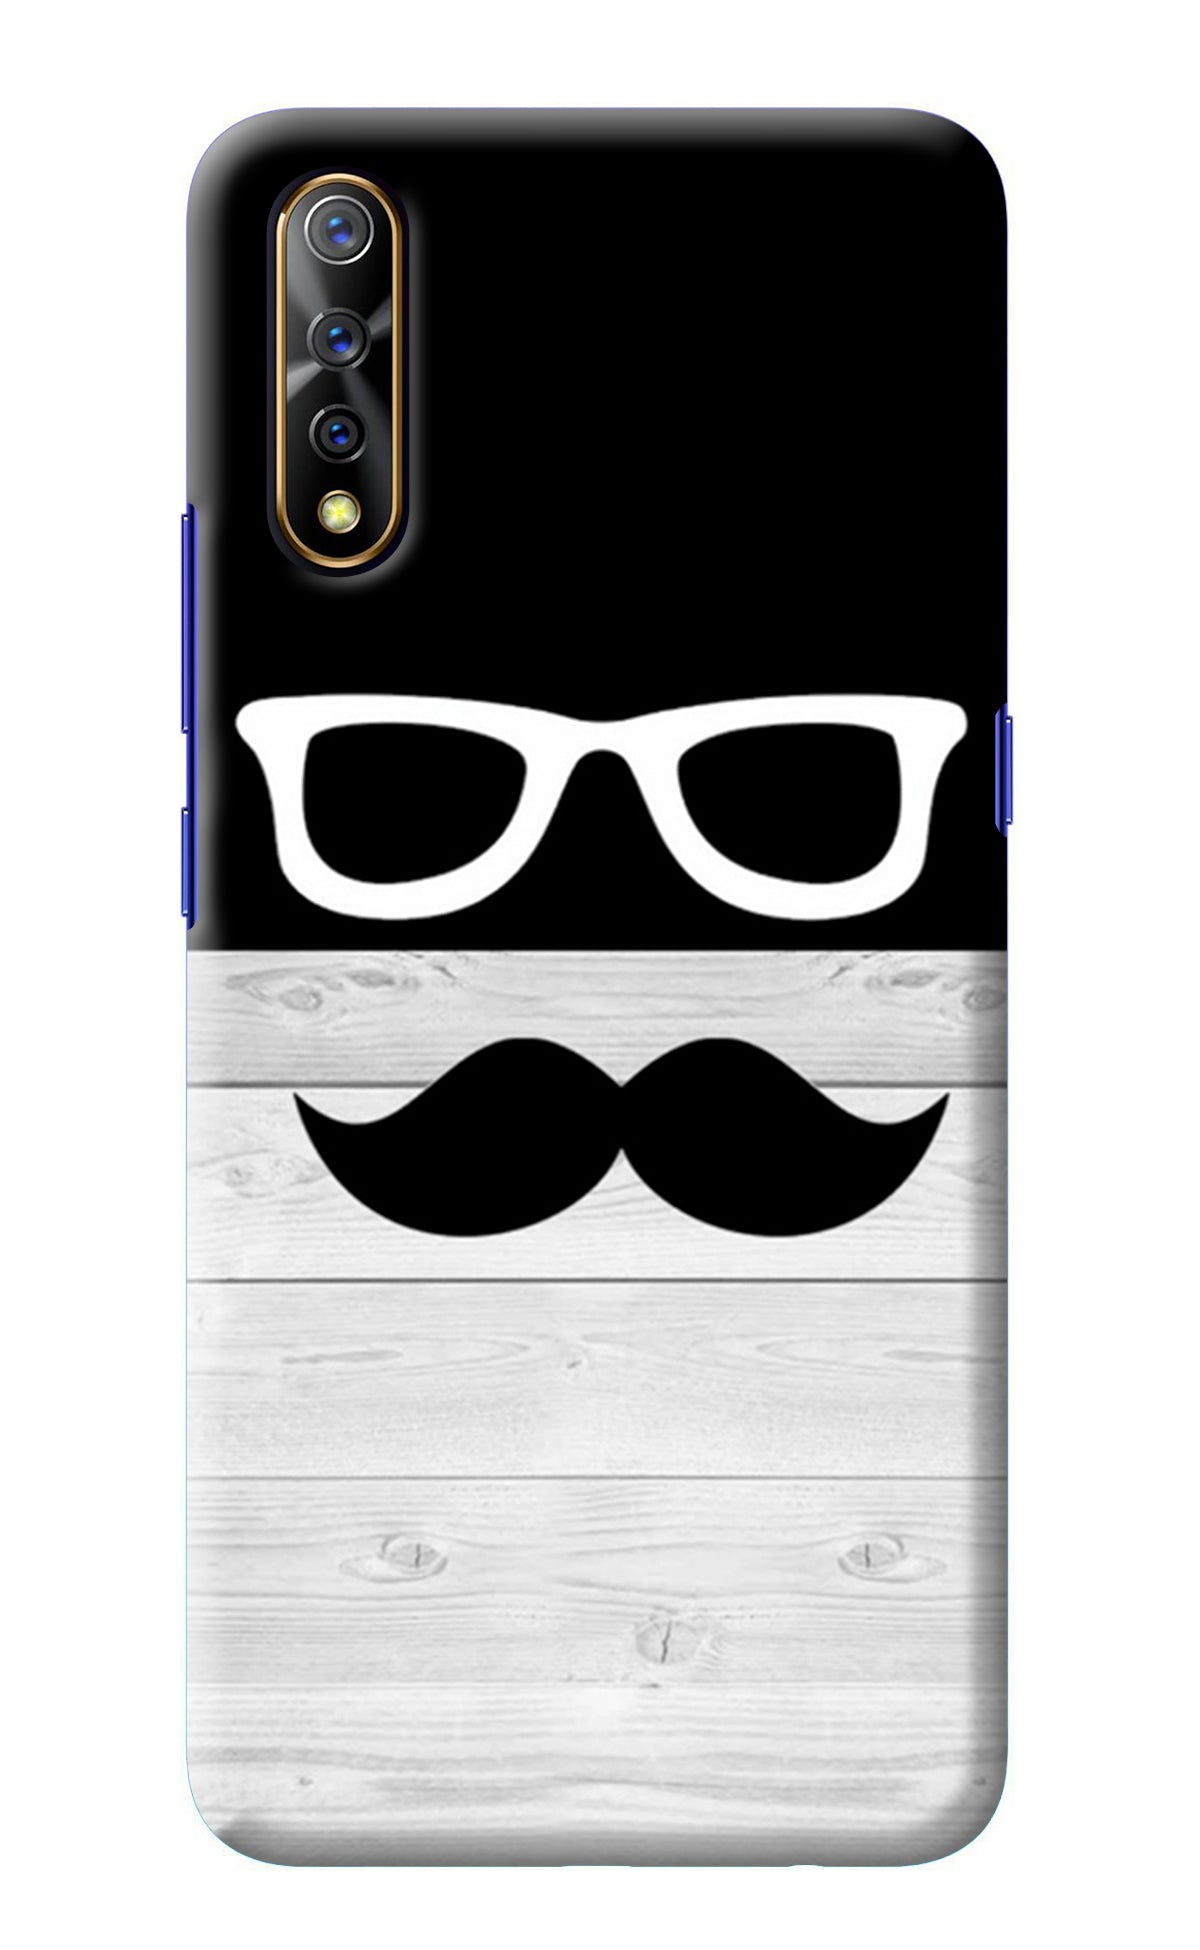 Mustache Vivo S1/Z1x Back Cover